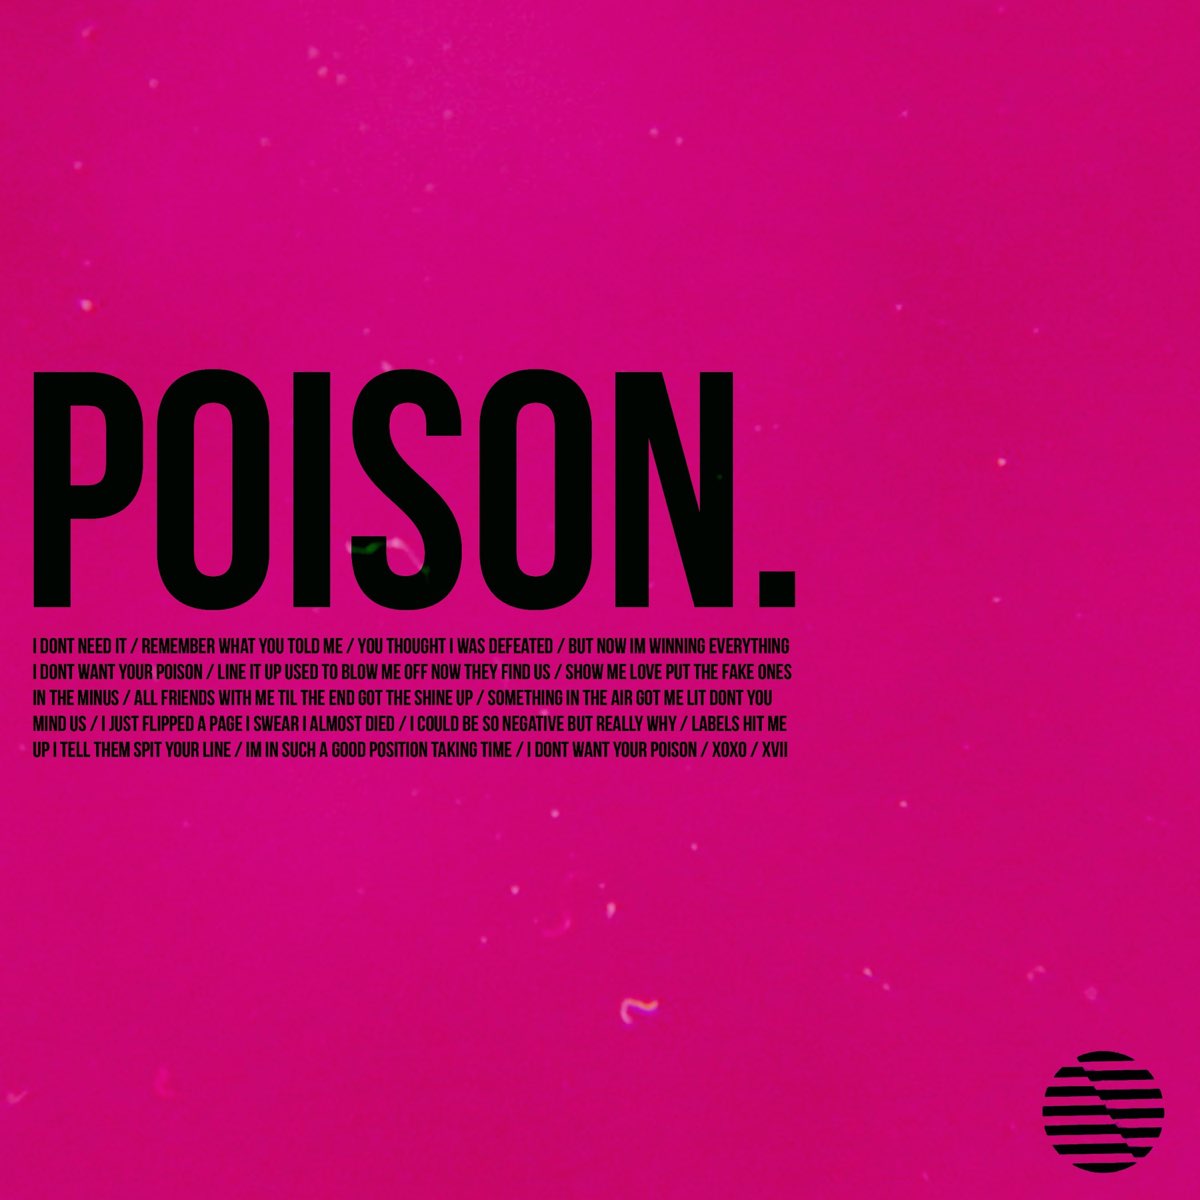 Poison альбомы. Poison текст. Poison перевод на русский. Перевод песни Poison.